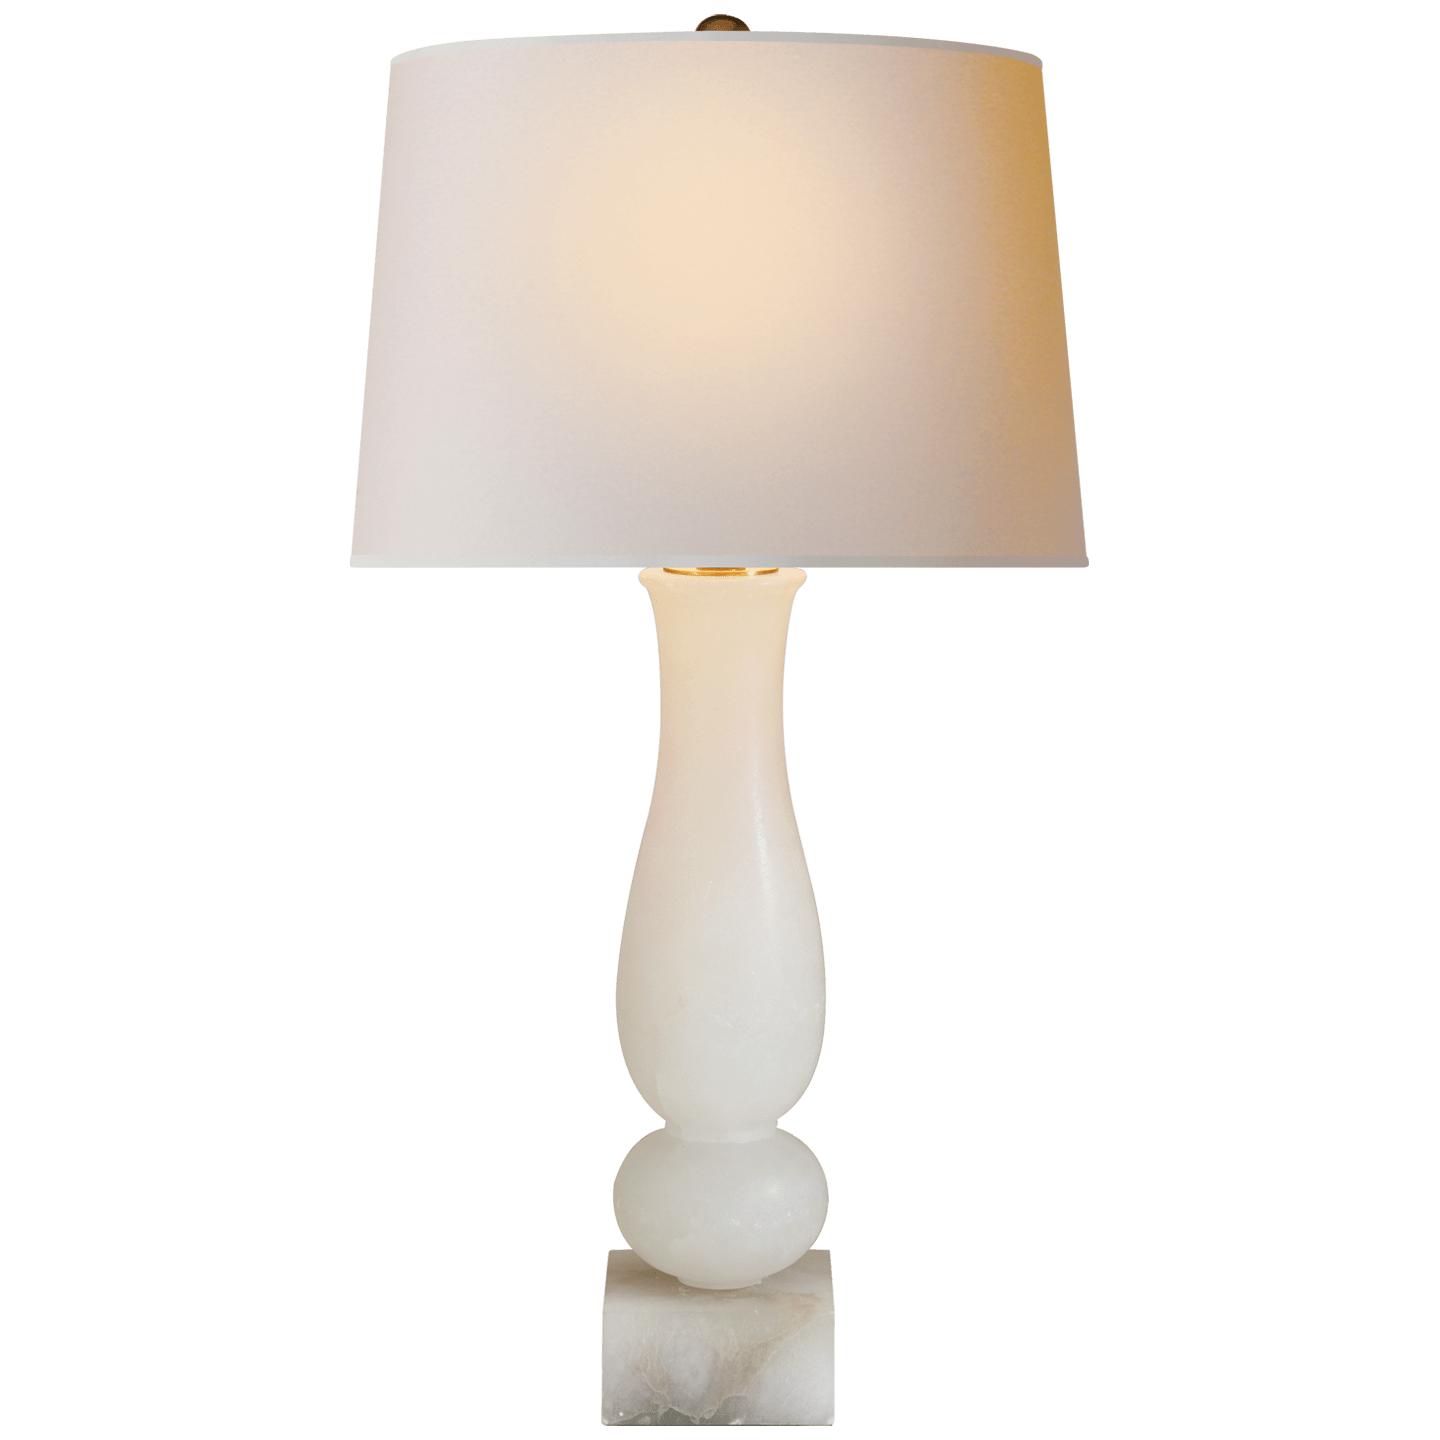 Купить Настольная лампа Contemporary Balustrade Table Lamp в интернет-магазине roooms.ru